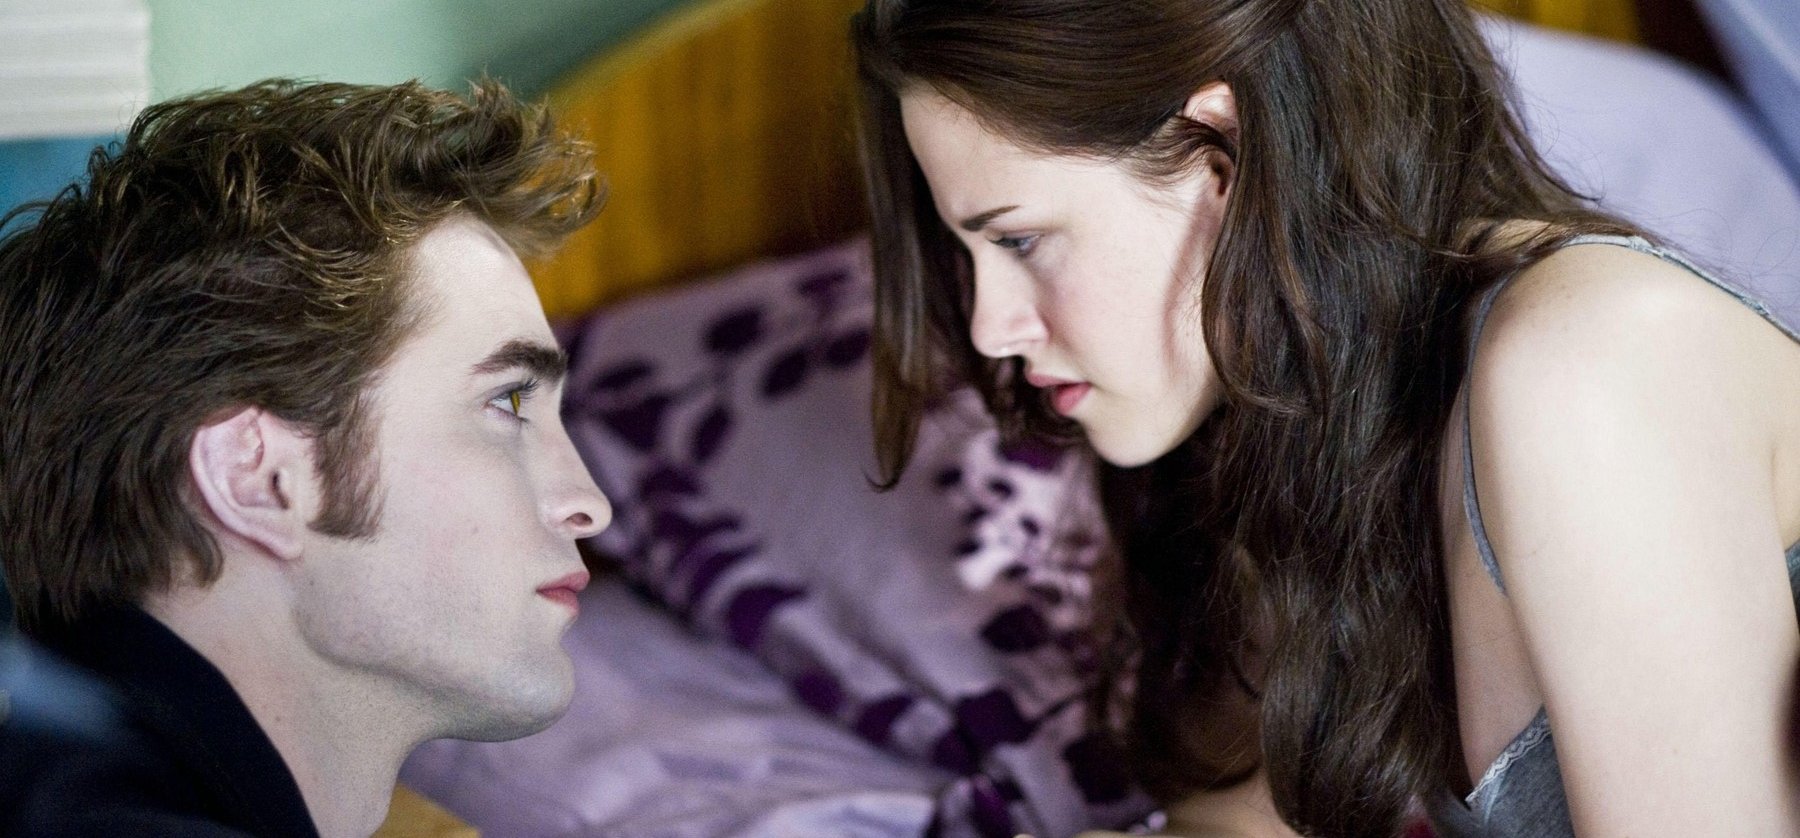 Úgy akarsz romantikázni, mint Bella és Edward az Alkonyatban? Most megteheted! – képek